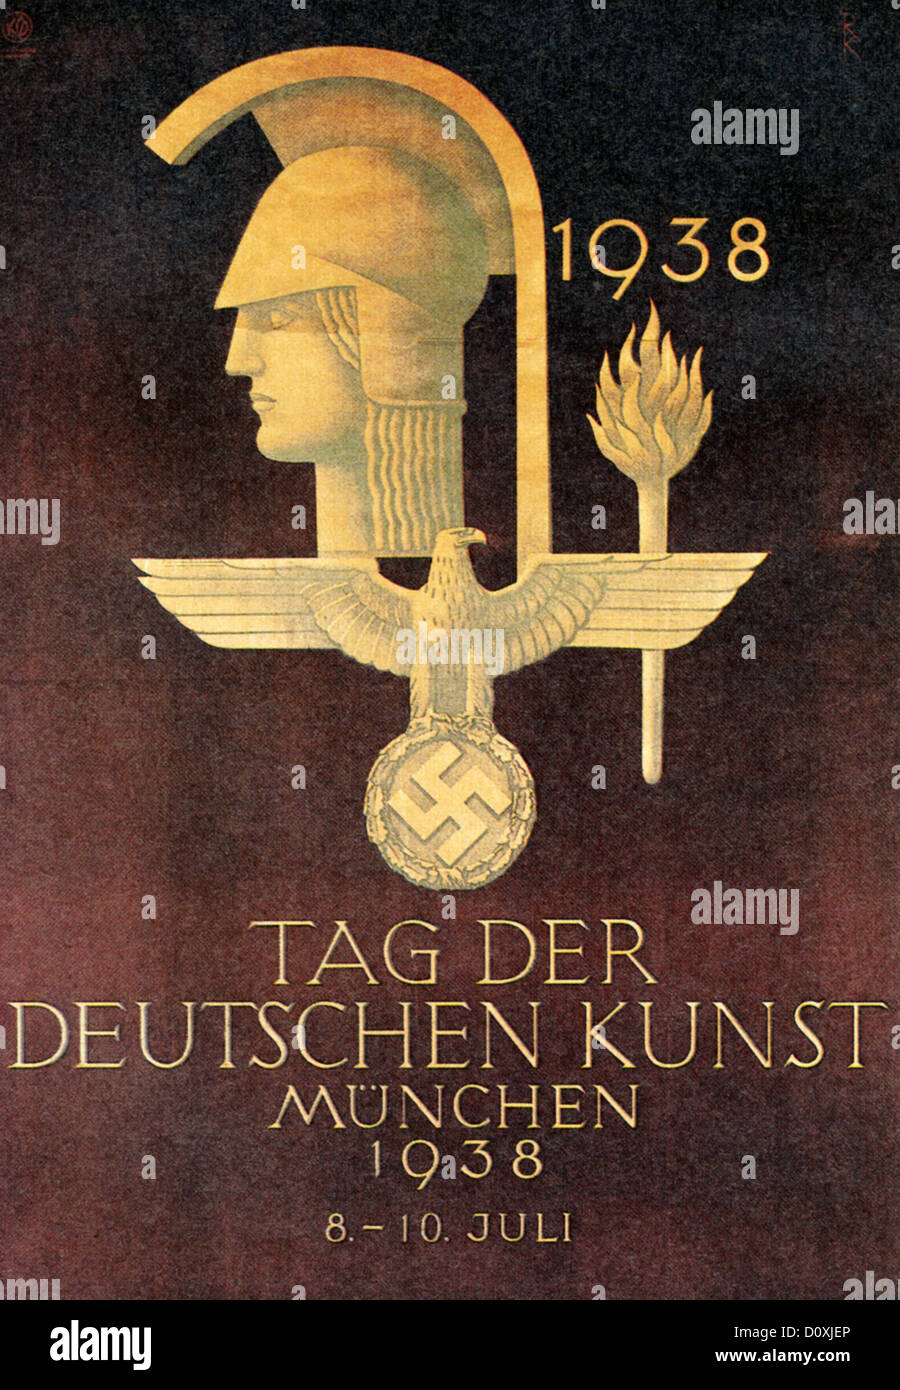 Day Of German Art, Nazi, art, exhibition, advertisement, Third Reich, Munich, 1938 Stock Photo